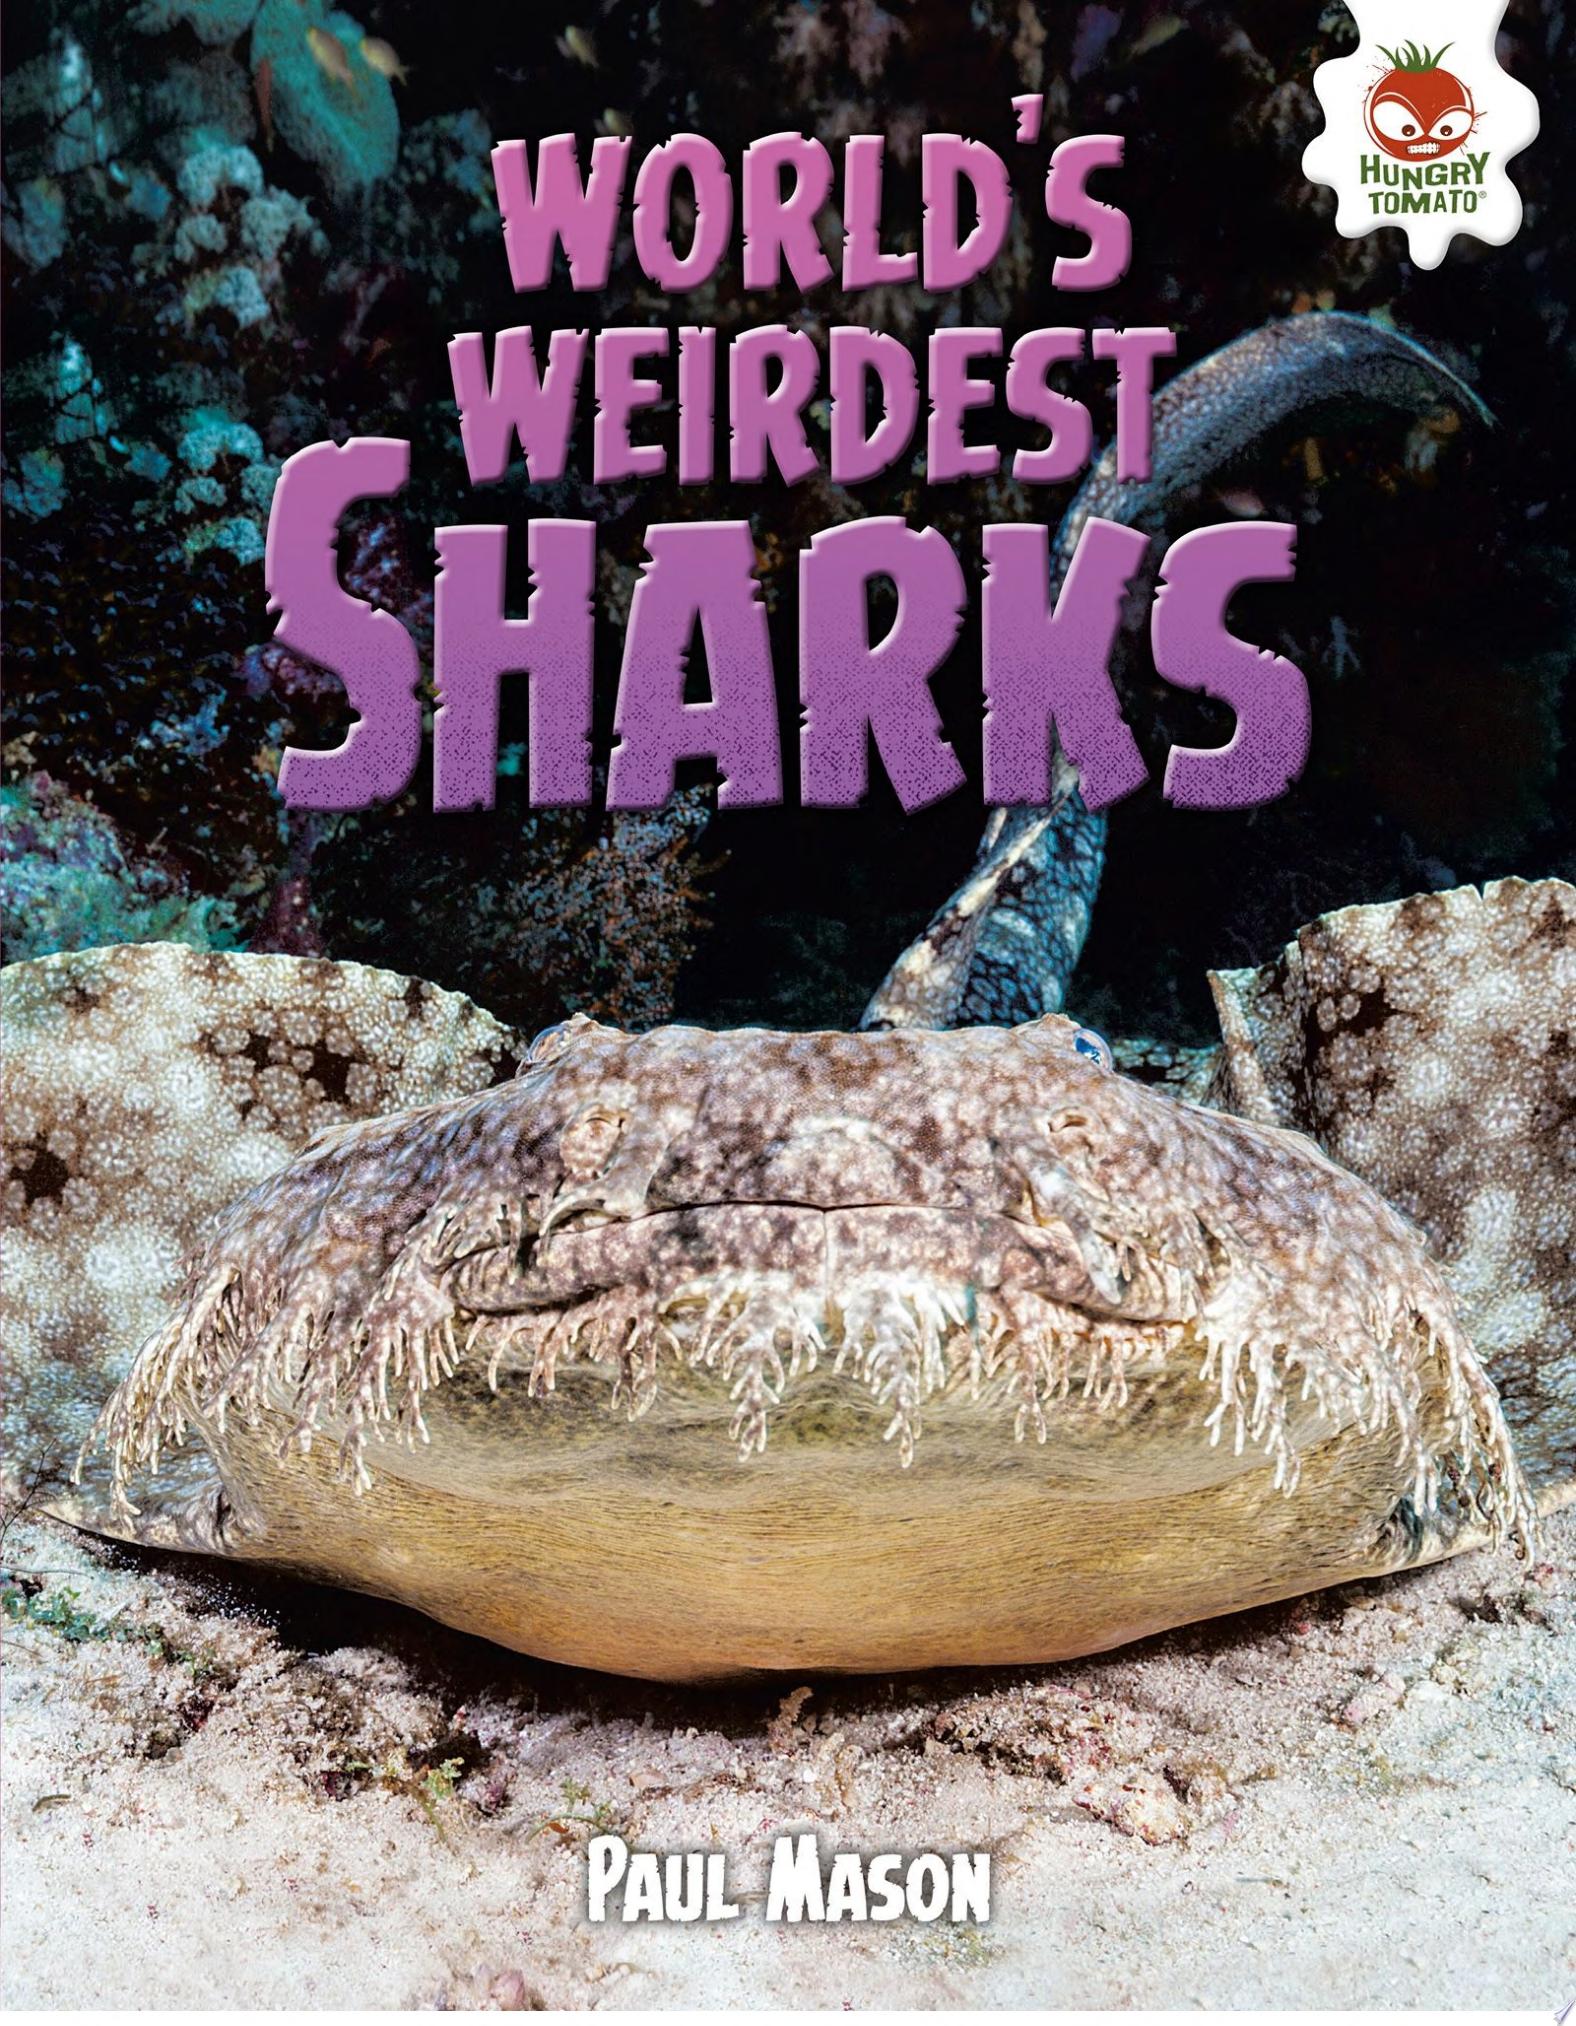 Image for "World&#039;s Weirdest Sharks"